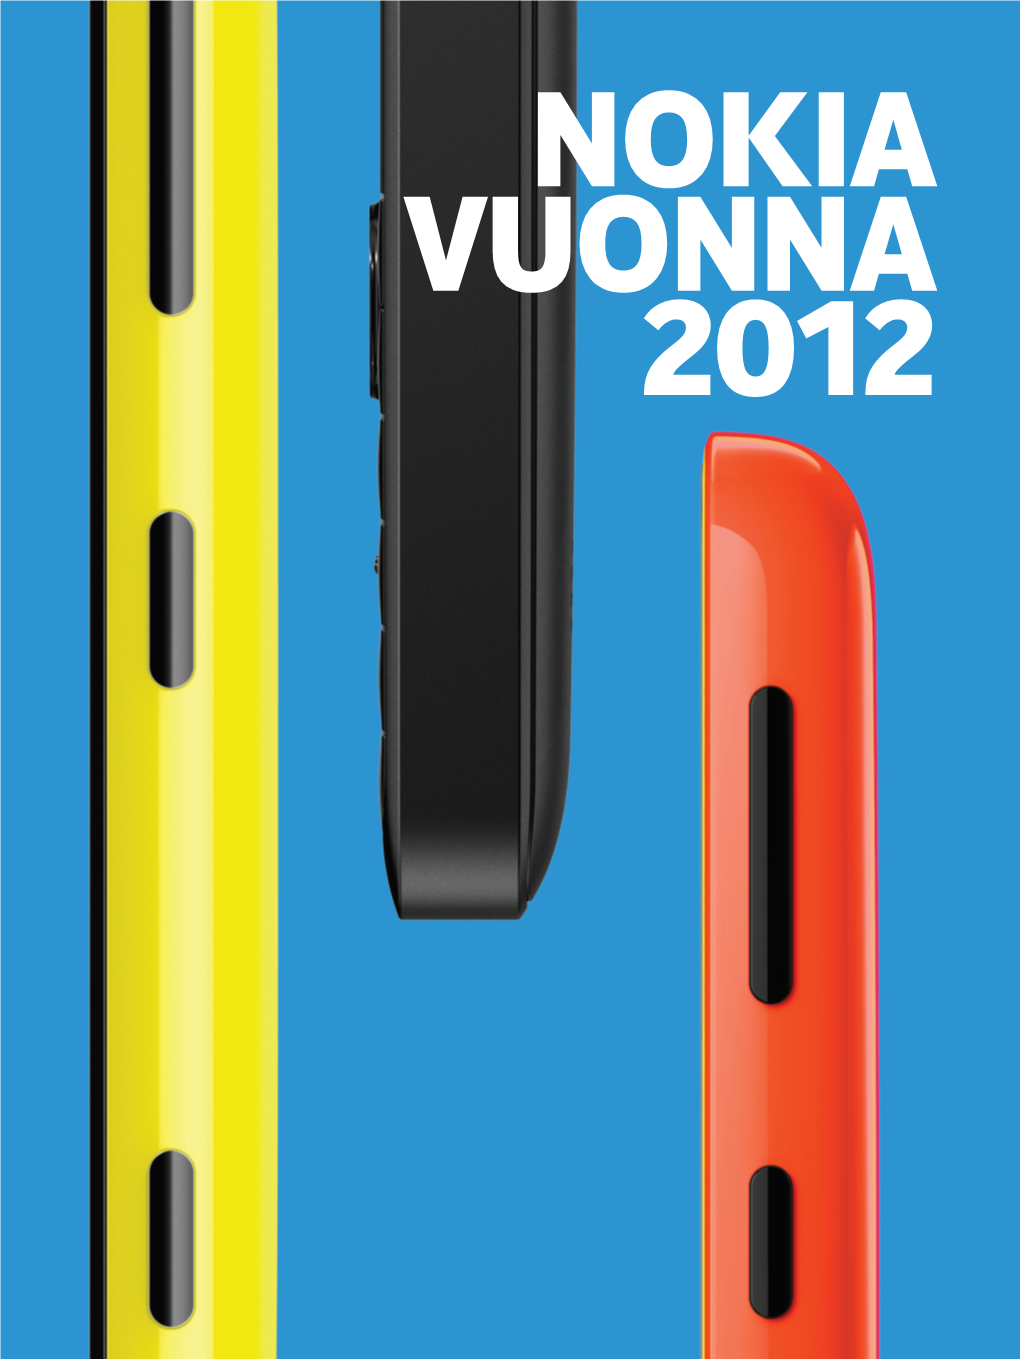 Nokia Vuonna 2012